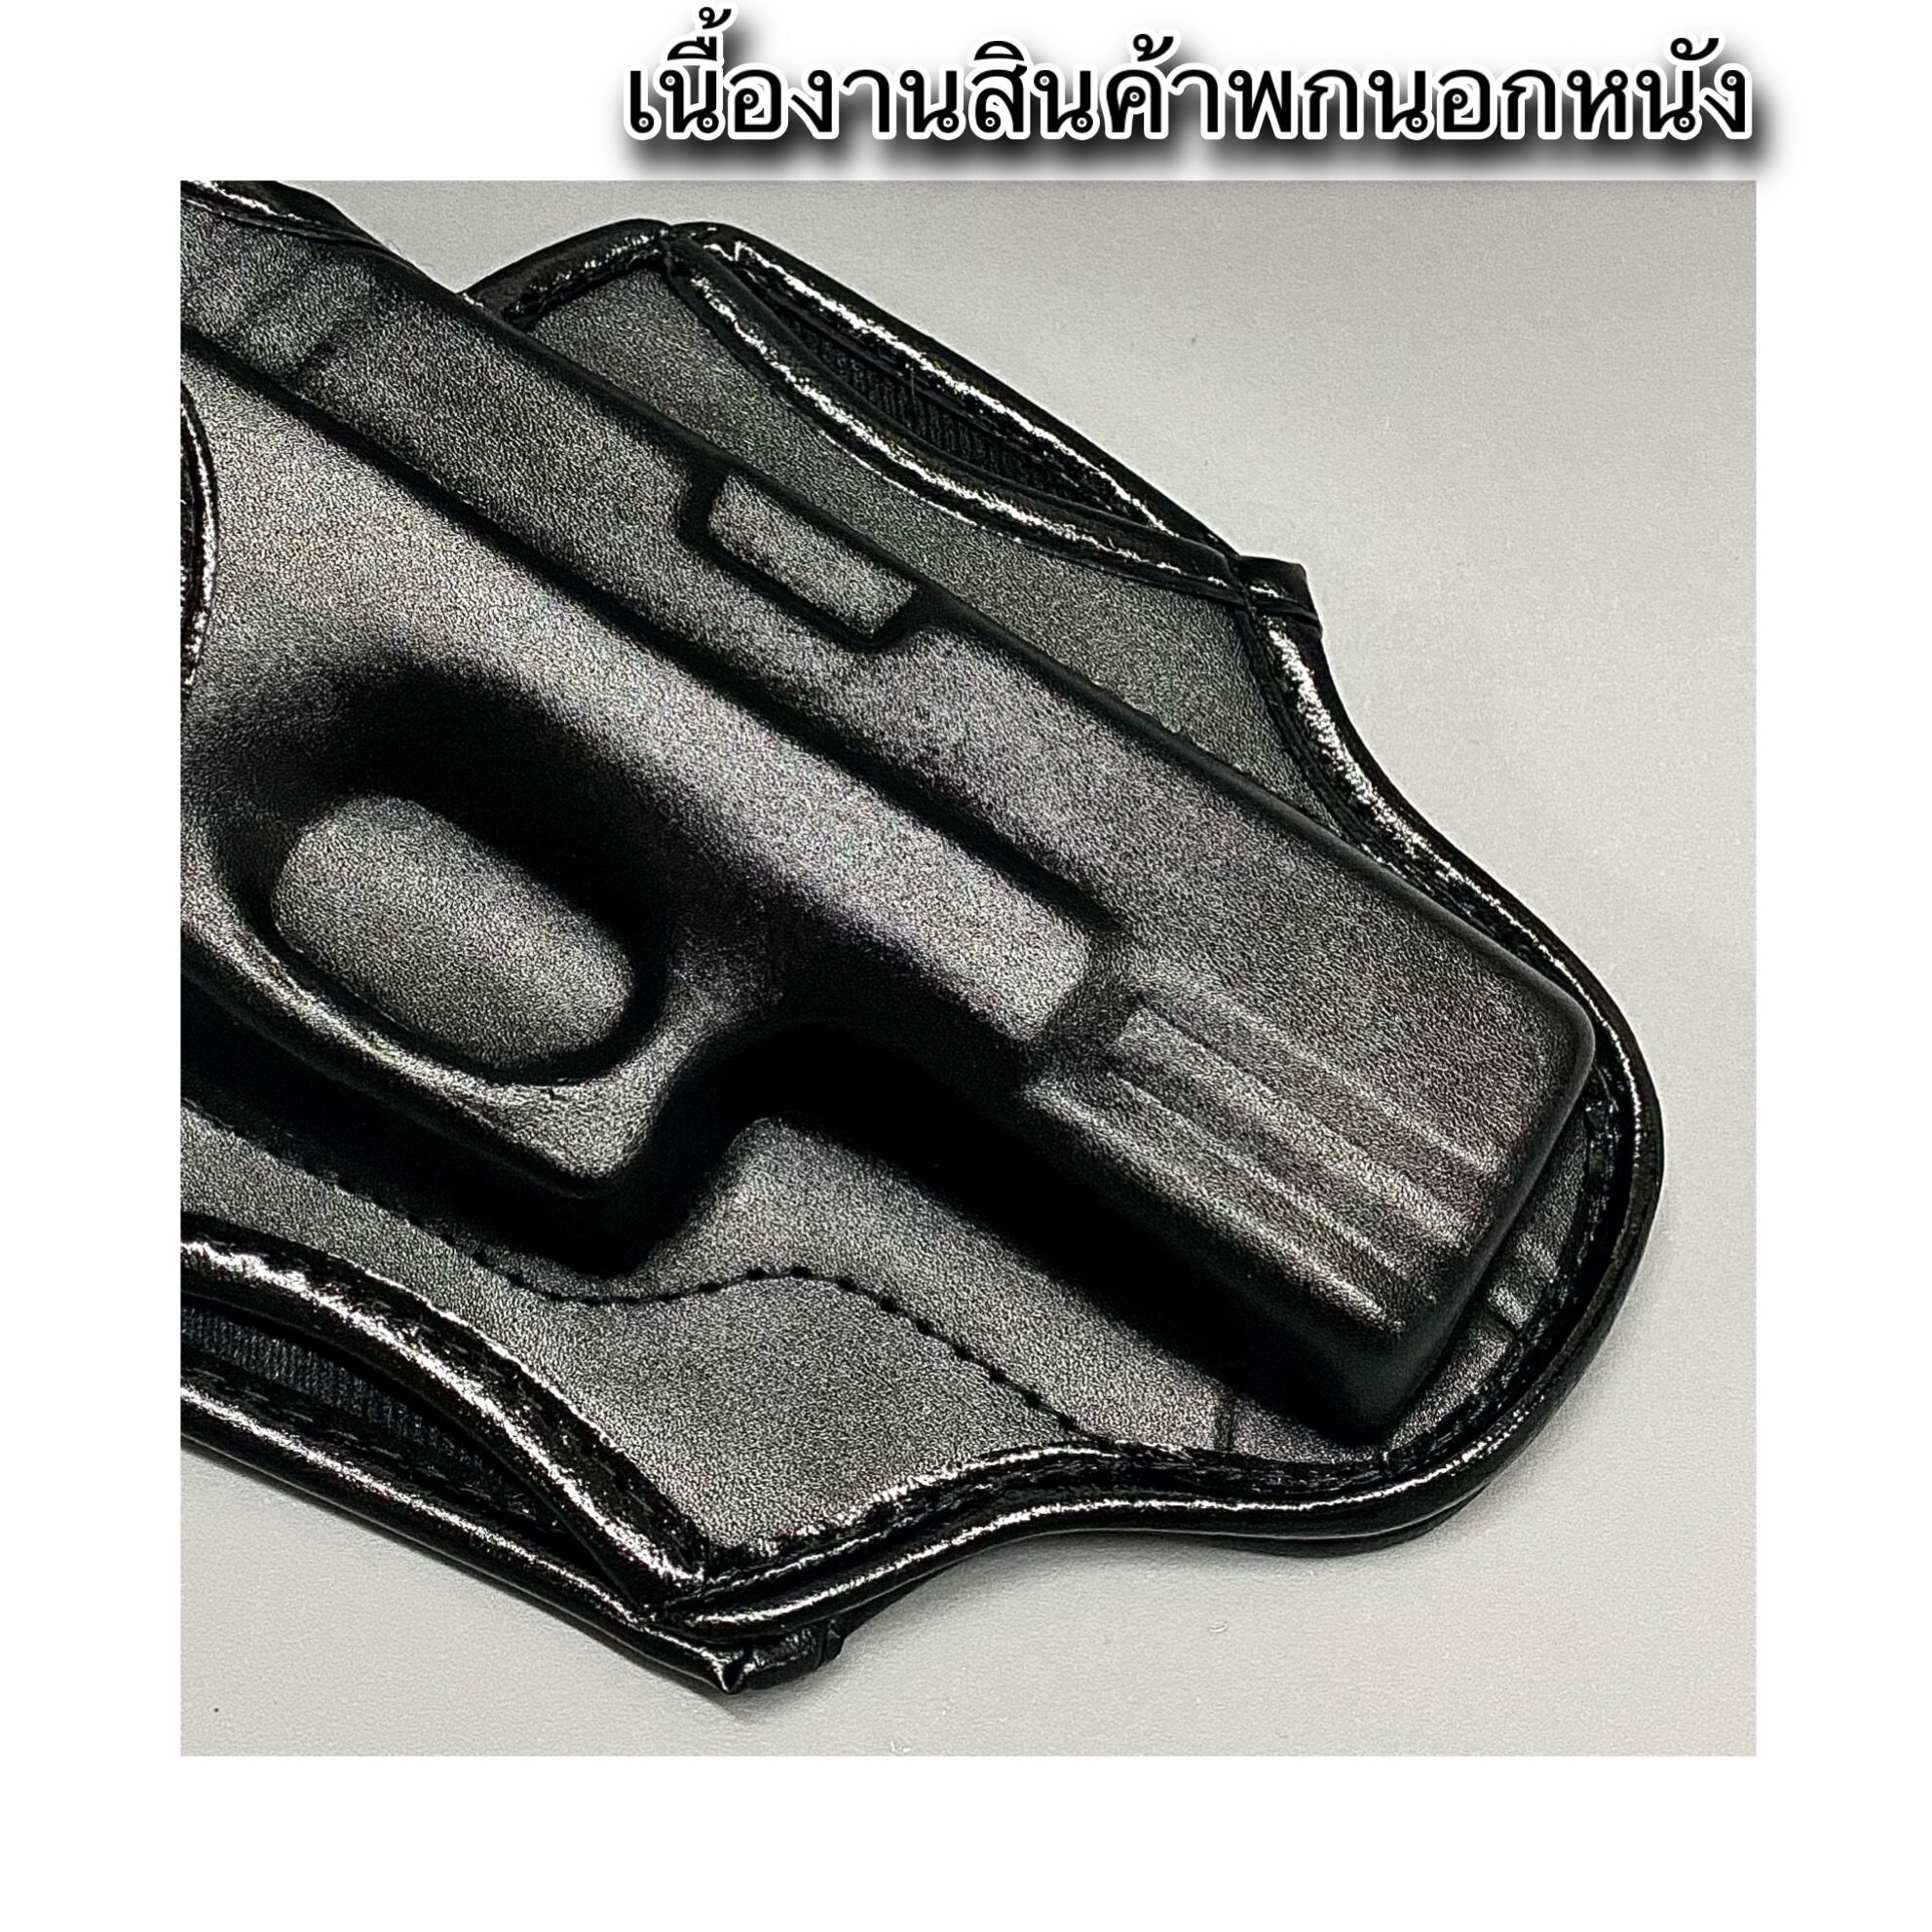 มุมมองเพิ่มเติมเกี่ยวกับ ซองปืน Glock 17 ซองปืนพกในหนังแท้ ซองปืนพกใน